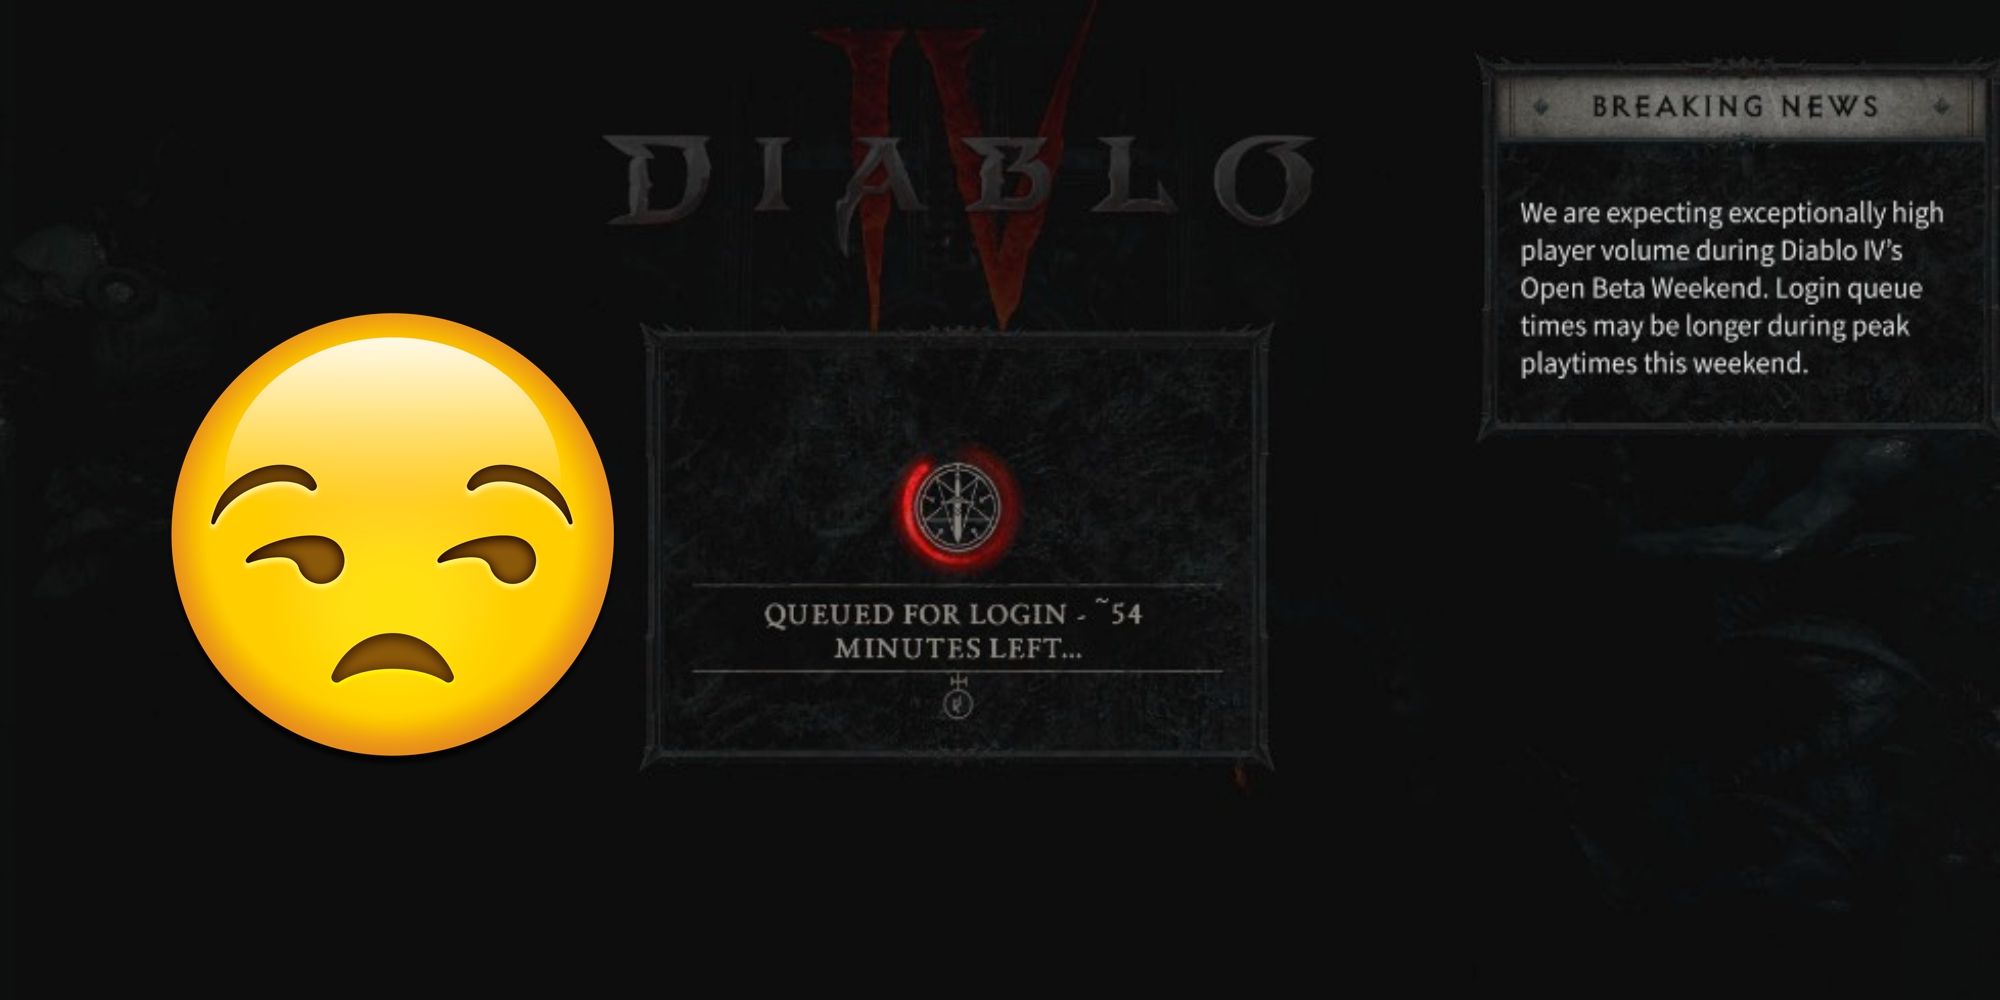 Diablo 4: Queued for Login Explained